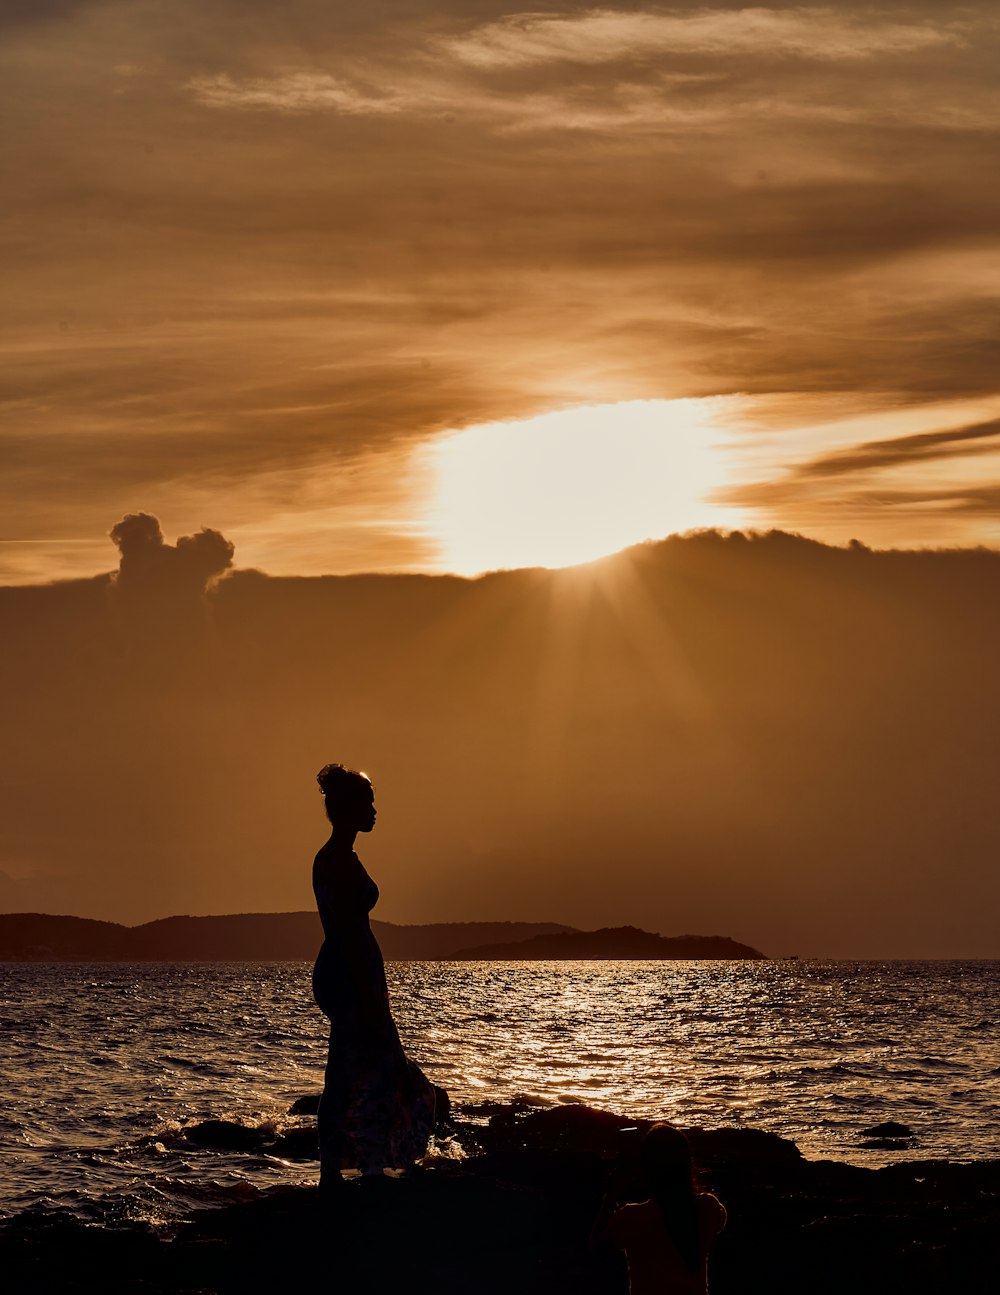 Una mujer parada en una playa rocosa junto al océano